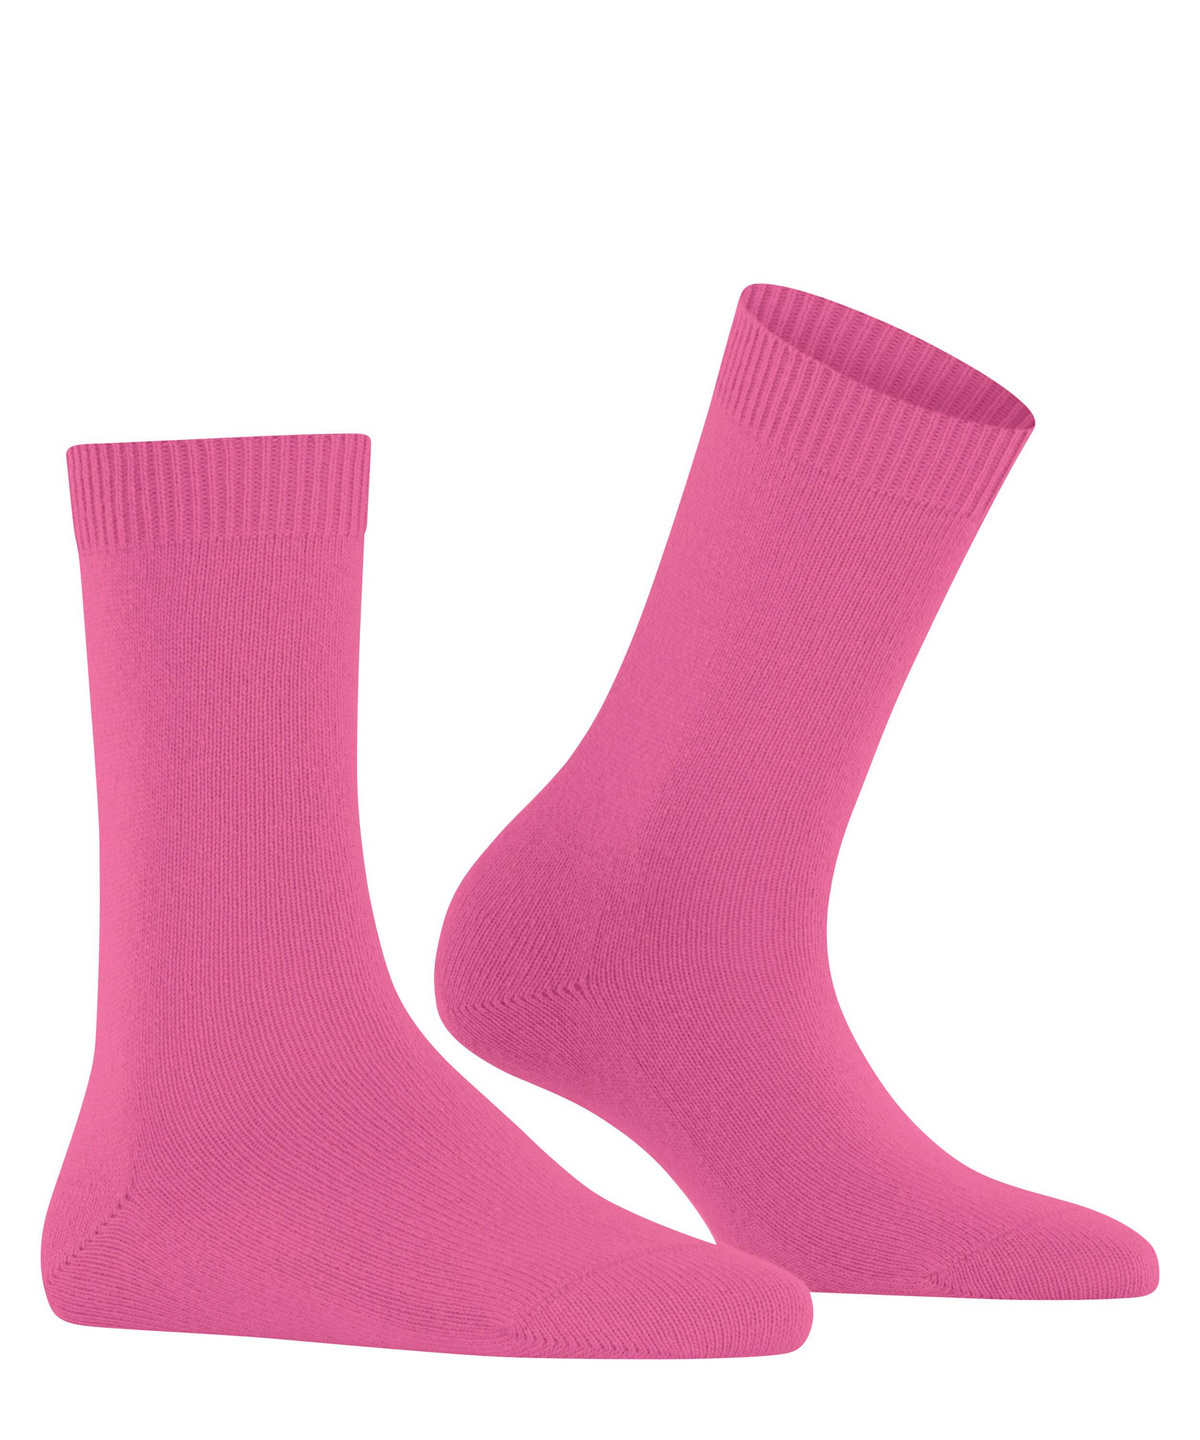 Damen-Socke Cosy Wool (Pink) FALKE 